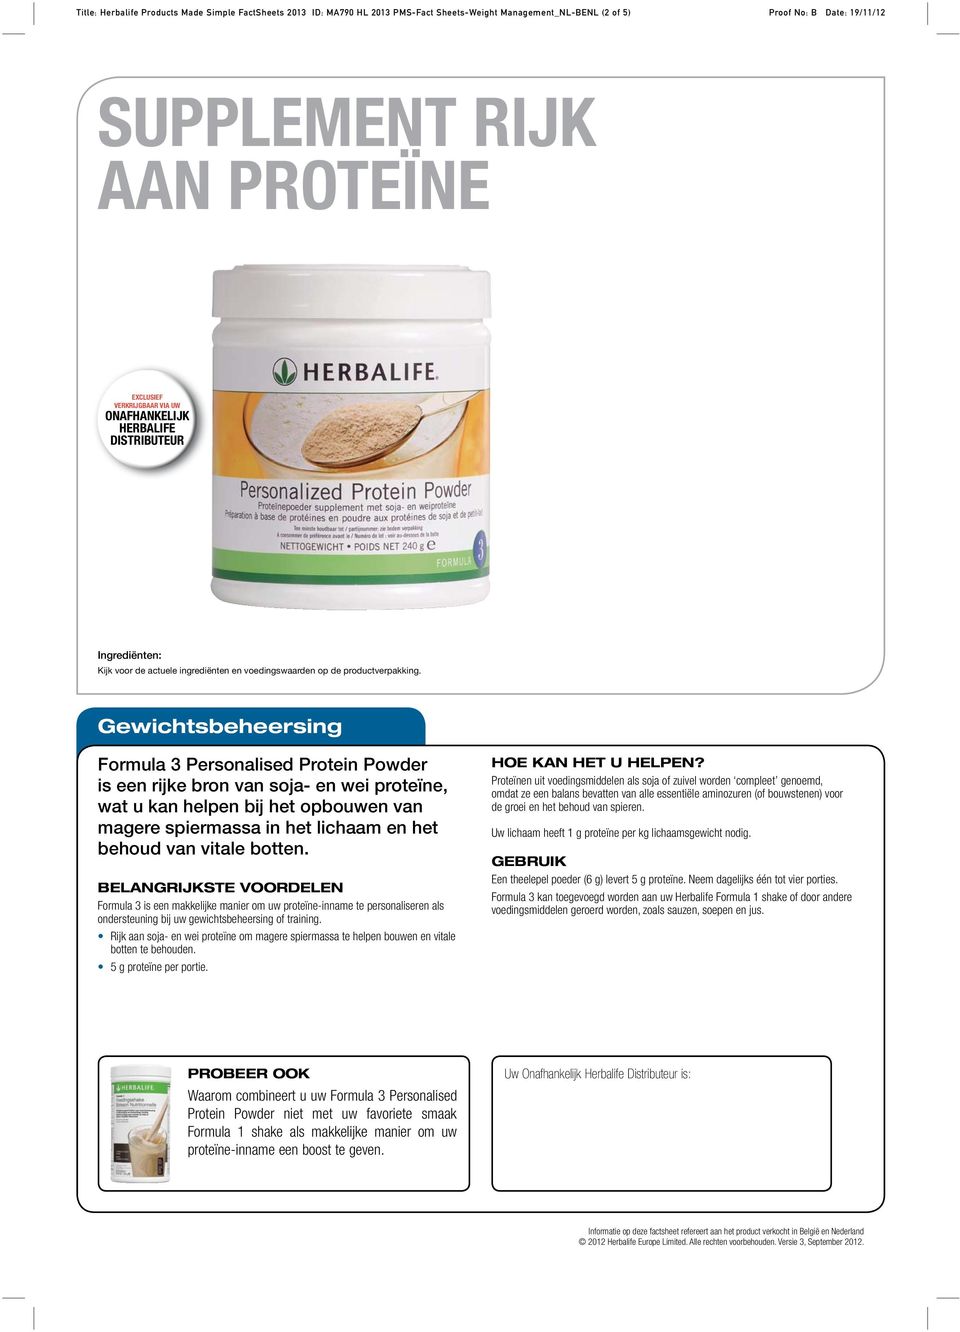 Rijk aan soja- en wei proteïne om magere spiermassa te helpen bouwen en vitale botten te behouden. 5 g proteïne per portie.